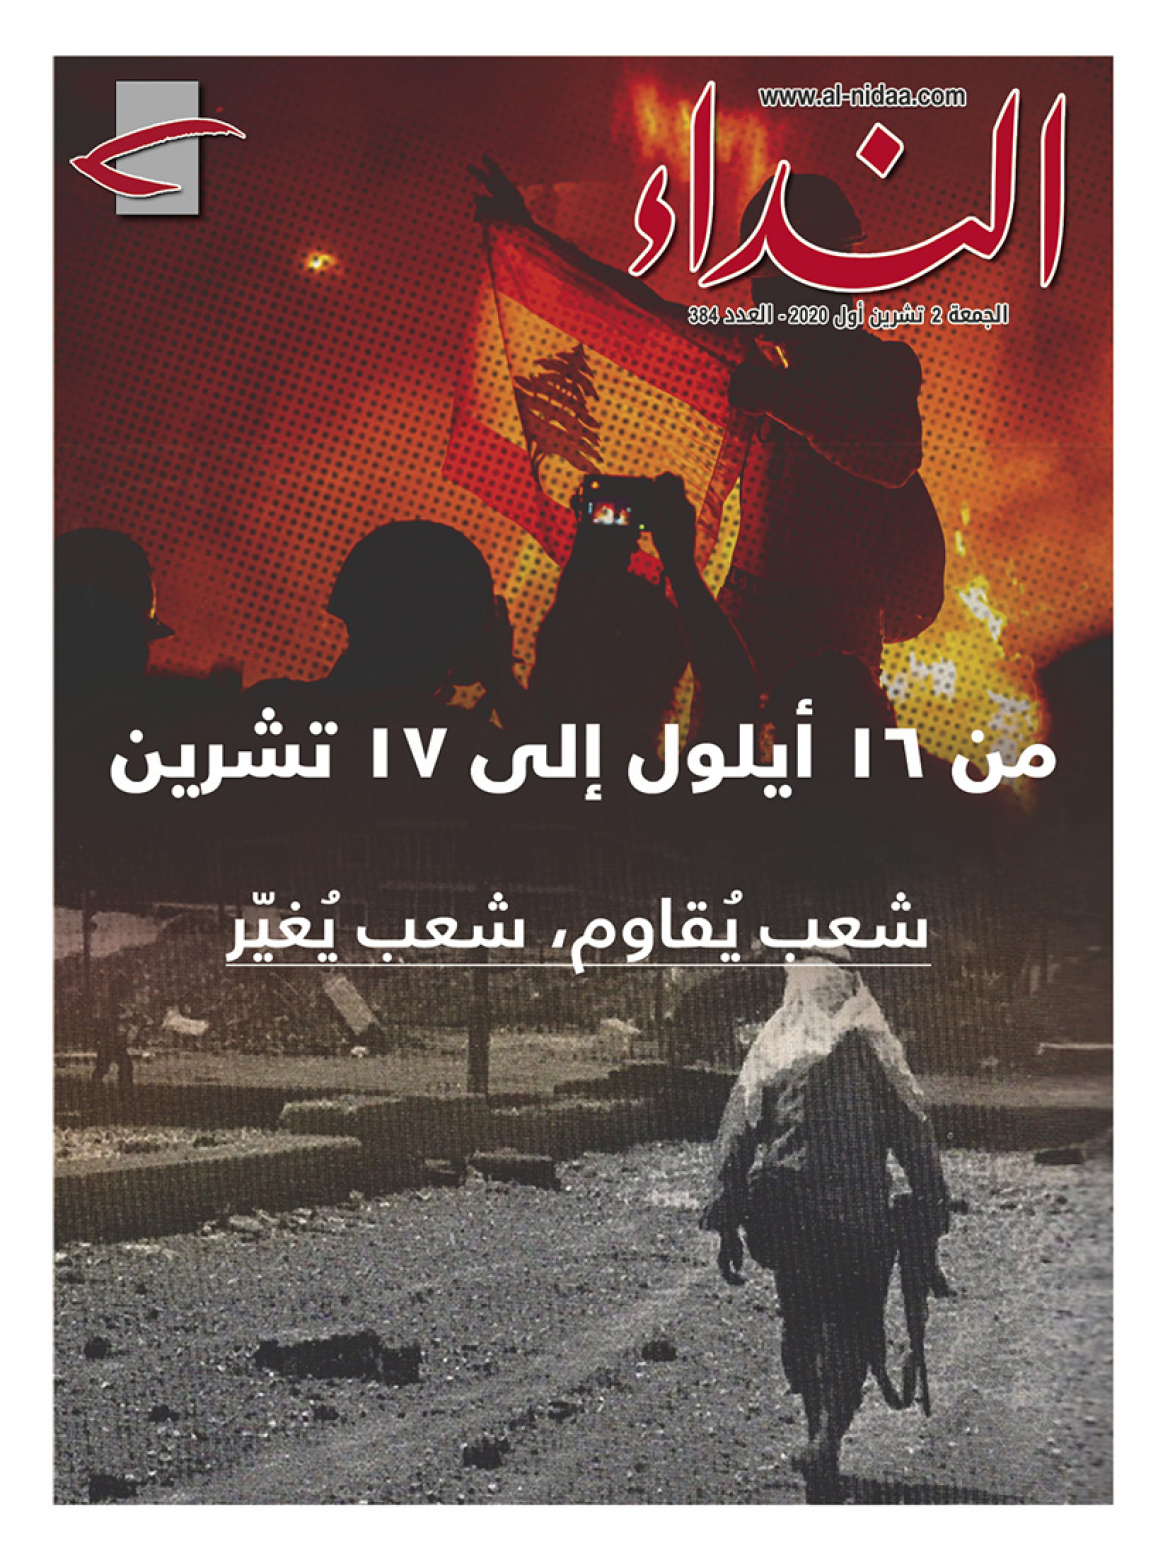 صدر العدد الجديد من مجلة النداء بعنوان: " من ١٦ أيلول إلى ١٧ تشرين: شعبٌ يقاوم، شعبٌ يغيّر"